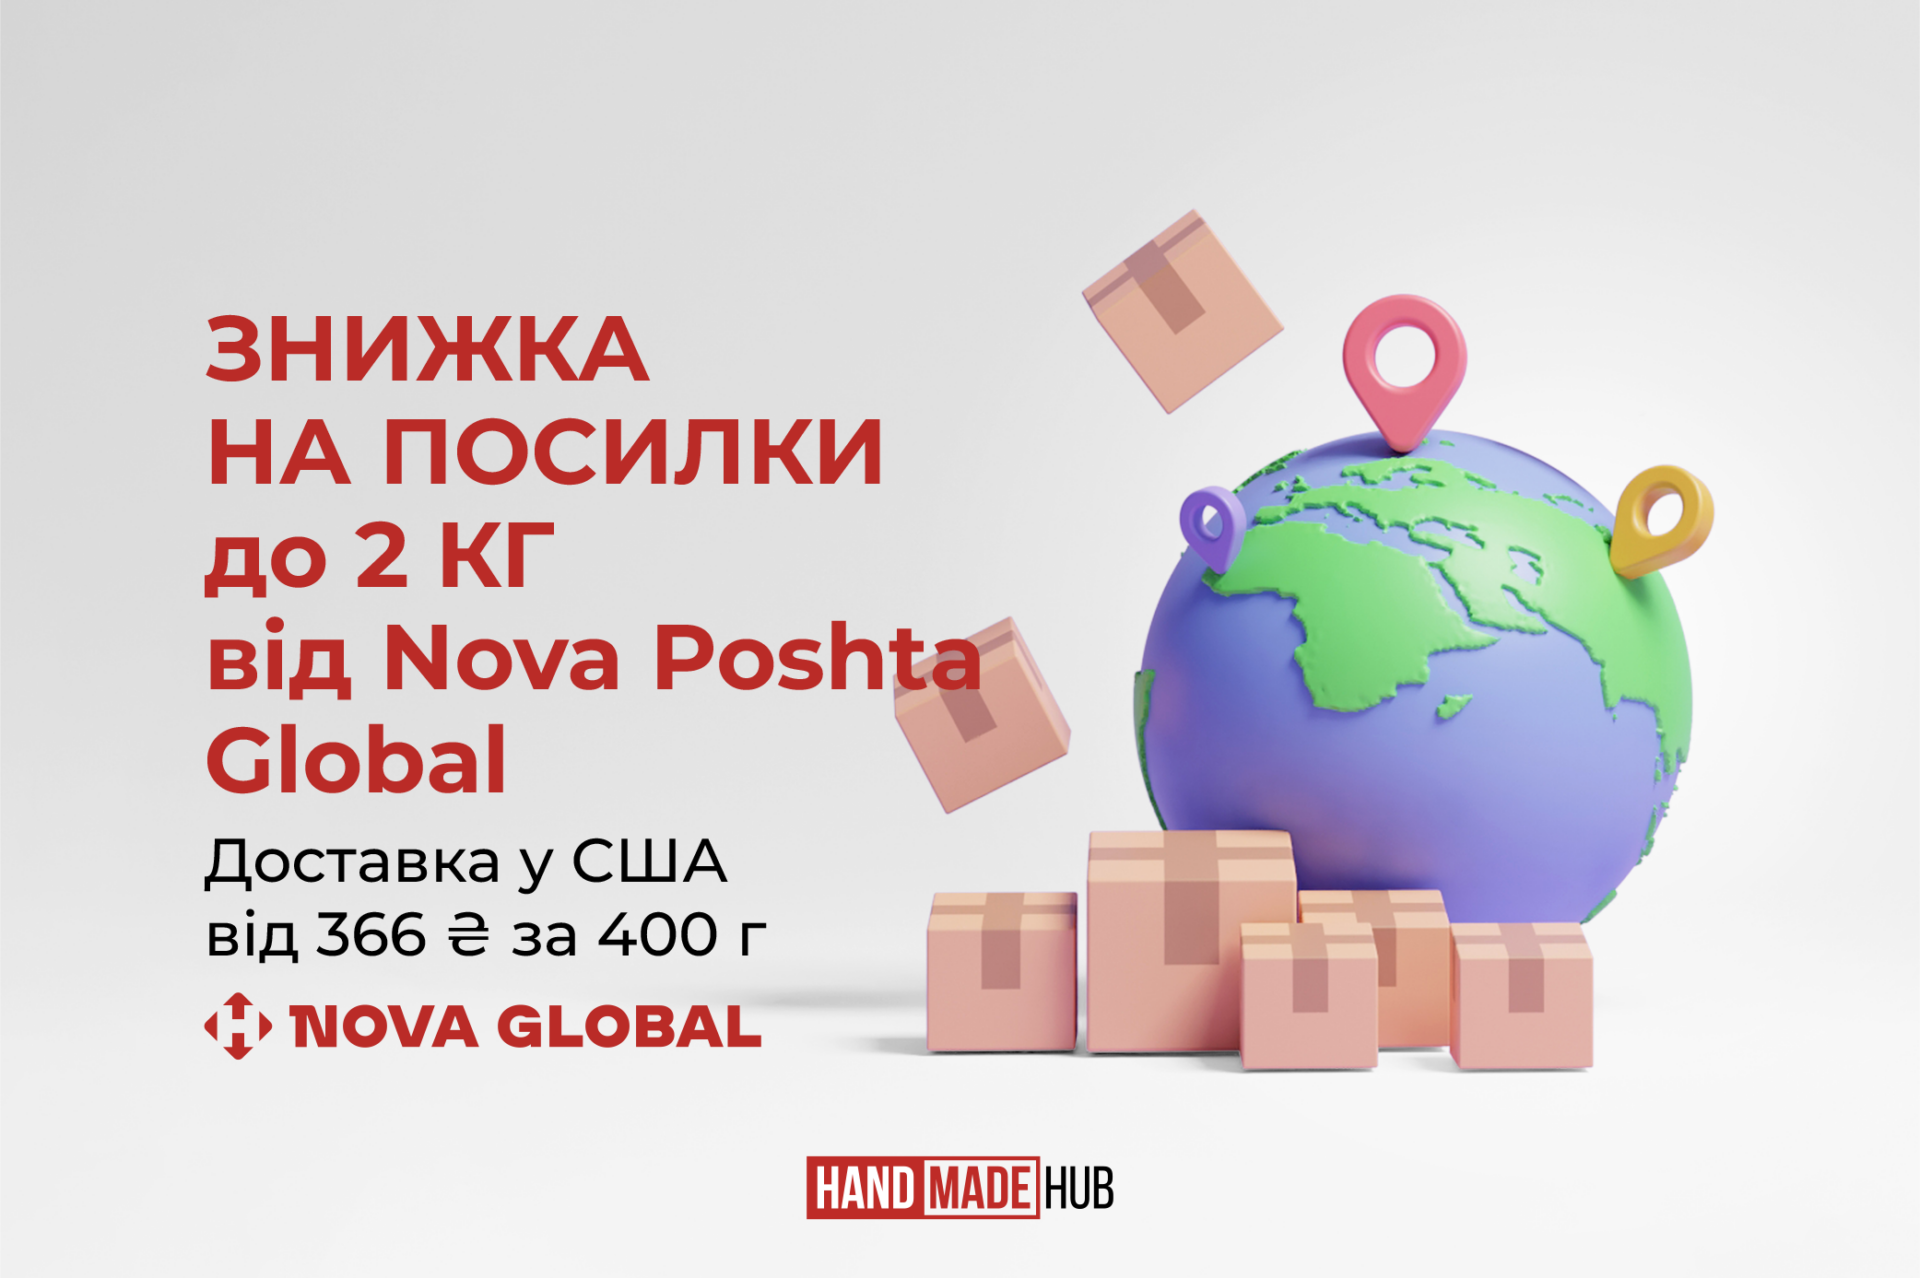 До -33% на доставку Nova Poshta Global для клієнтів HANDMADE-HUB UA